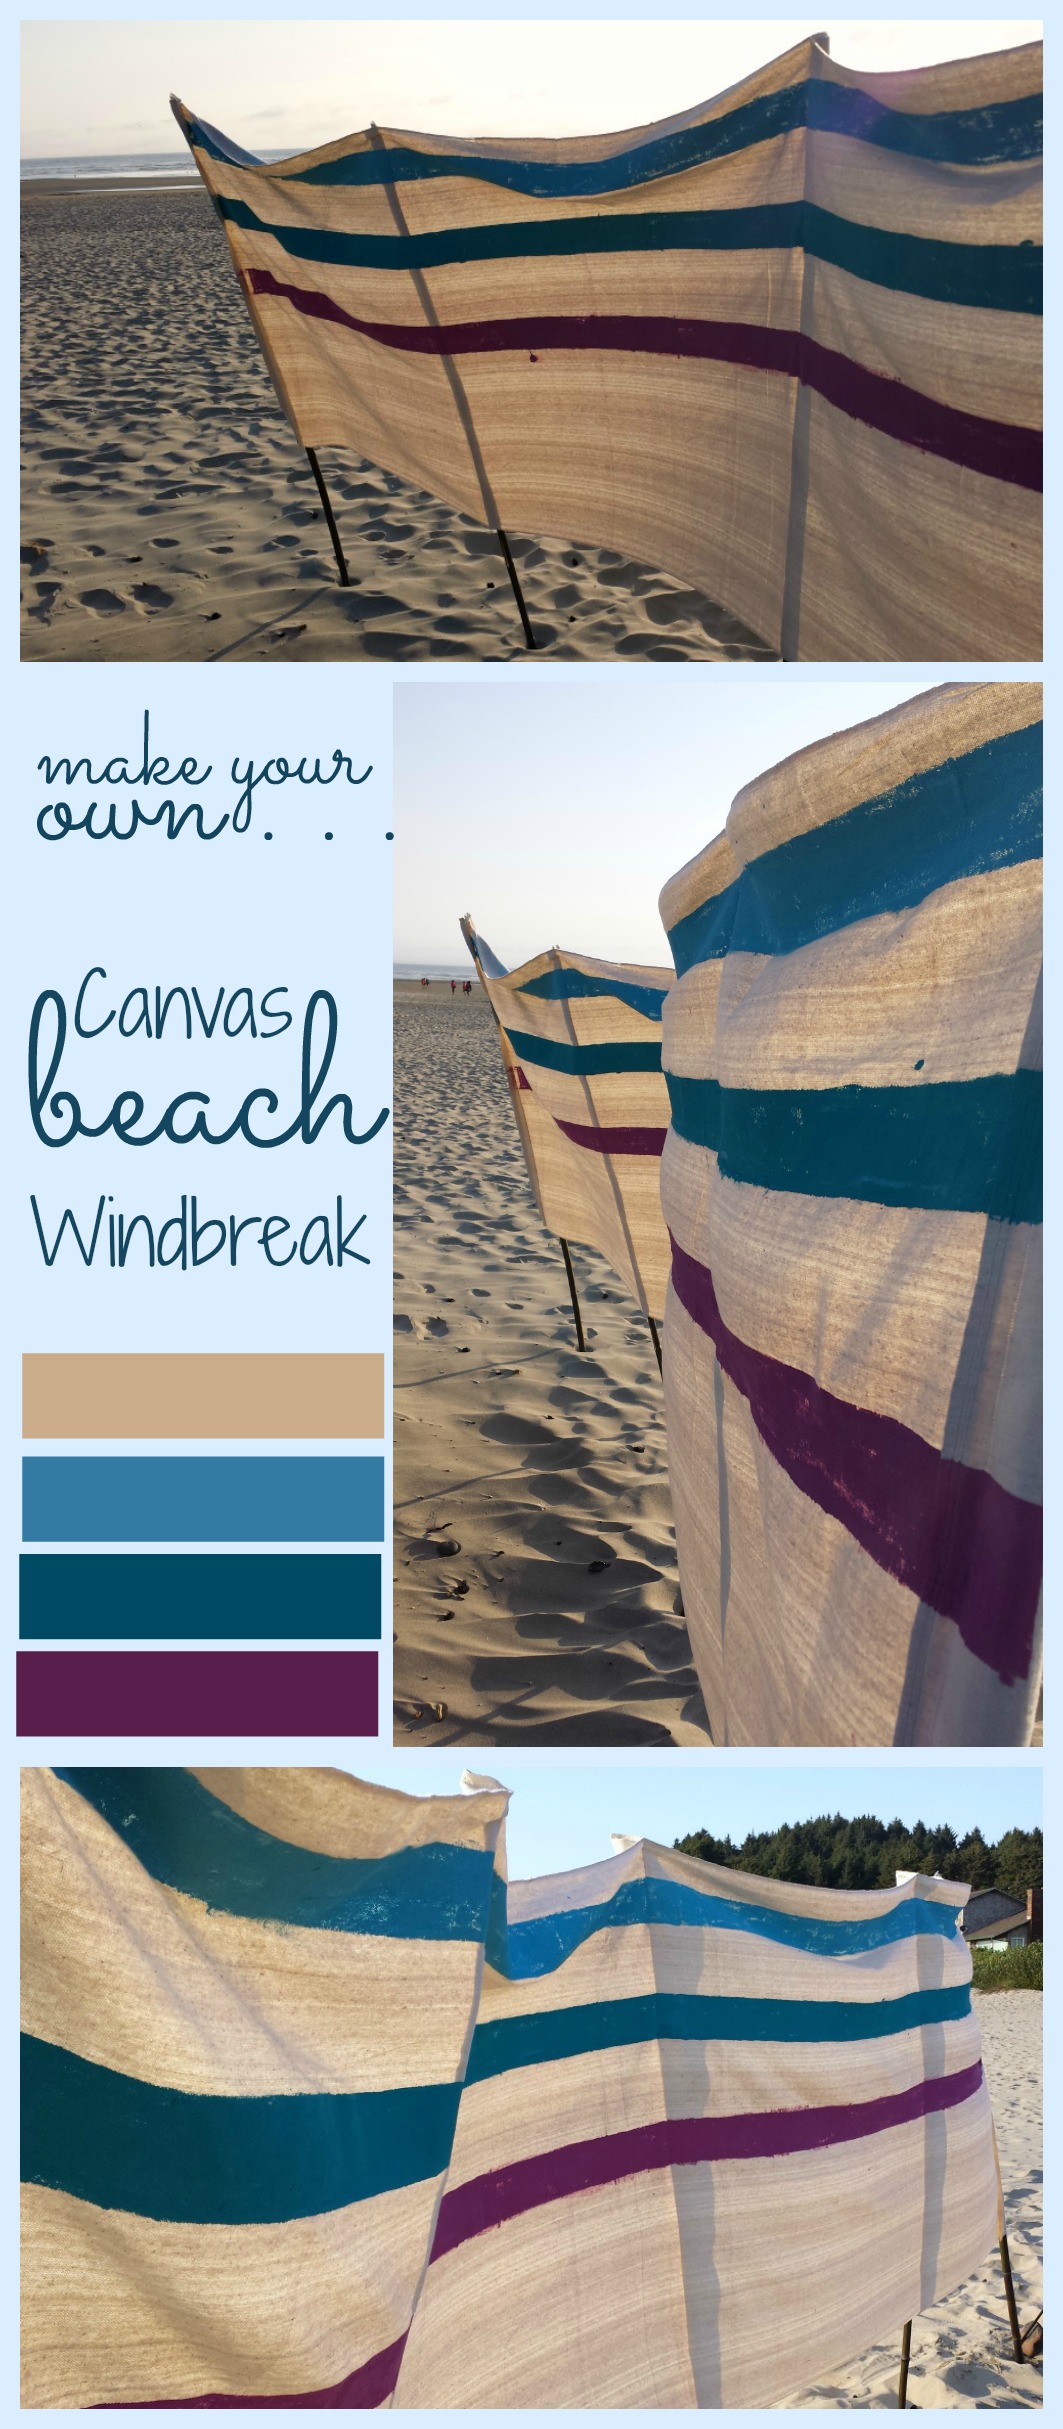 Stwórz swój własny Canvas Beach windbreak